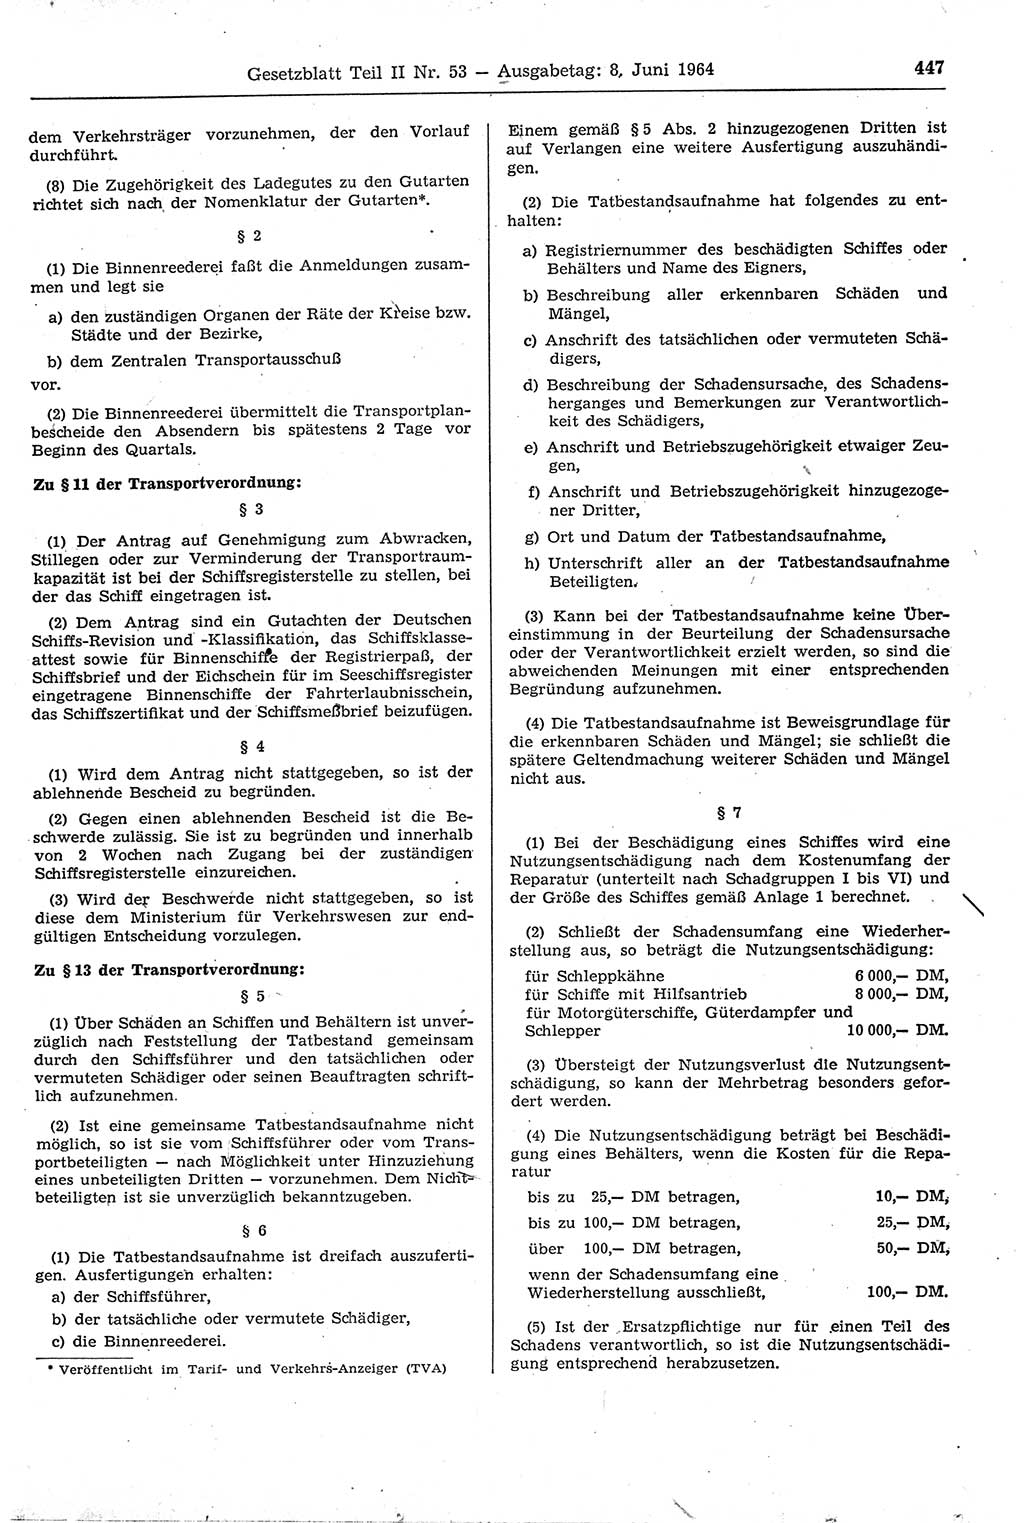 Gesetzblatt (GBl.) der Deutschen Demokratischen Republik (DDR) Teil ⅠⅠ 1964, Seite 447 (GBl. DDR ⅠⅠ 1964, S. 447)